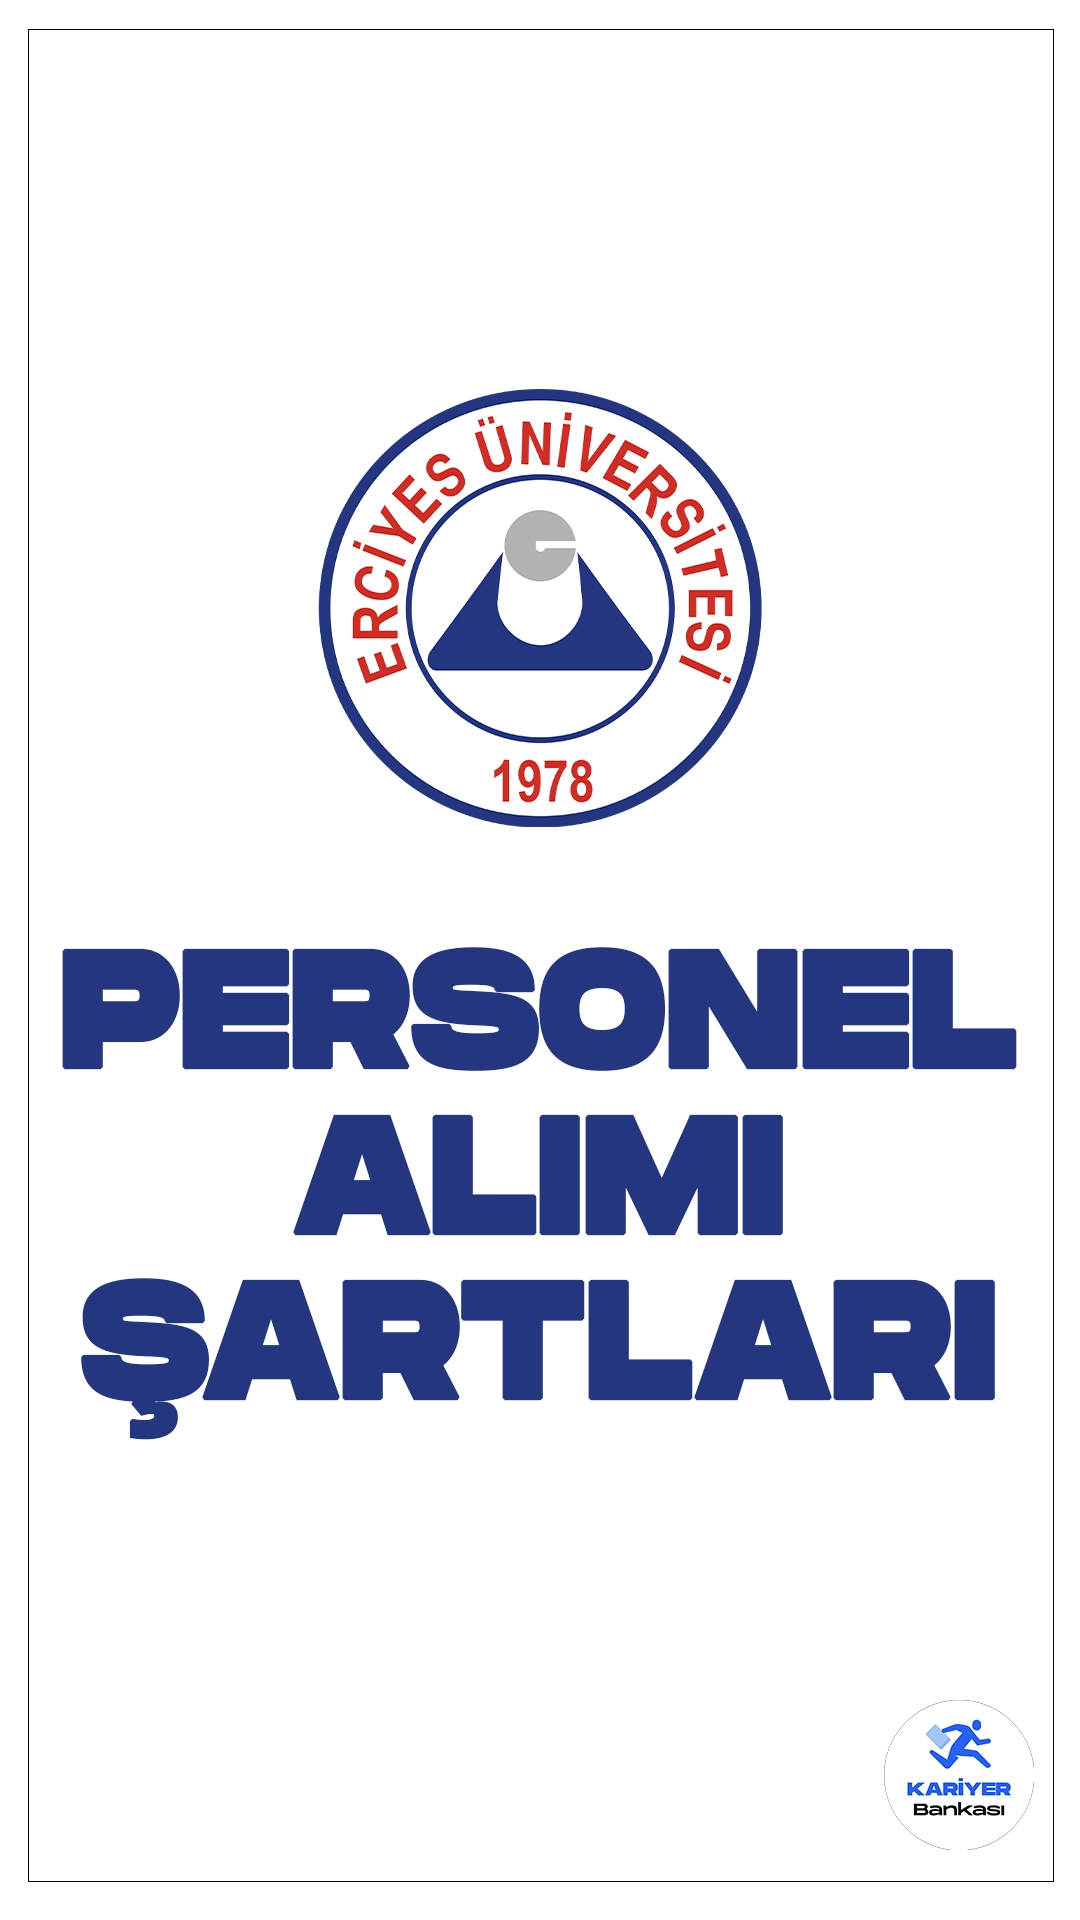 Erciyes Üniversitesi personel alımı başvuruları sürüyor. Başvuru şartları ve başvuru bilgilerine dair detaylar bu haberimizde.